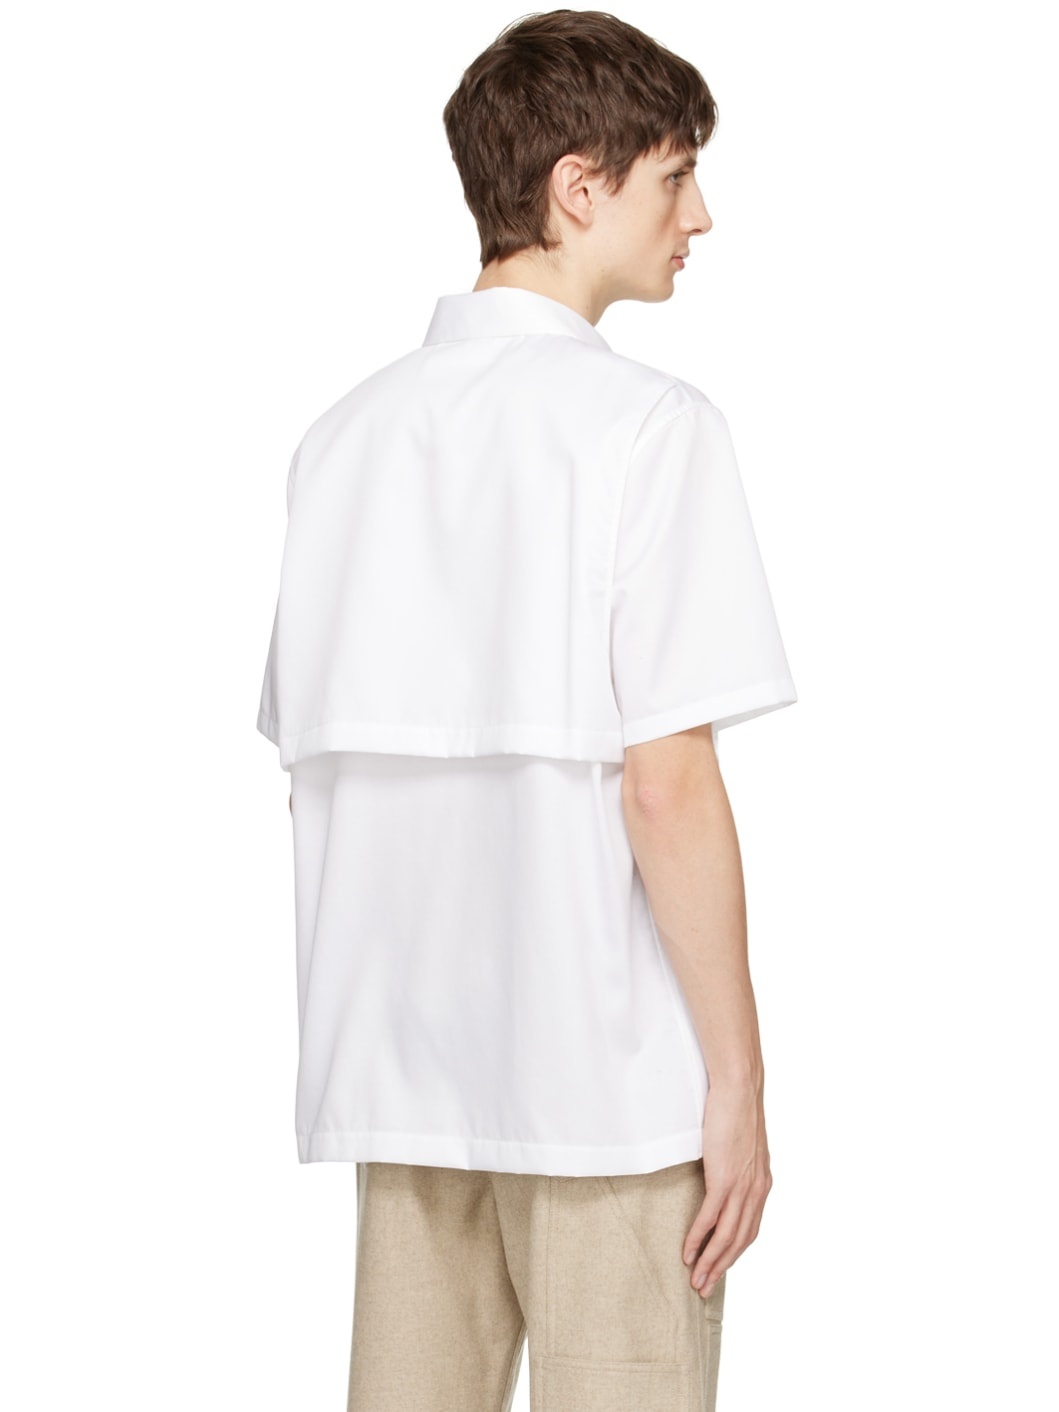 White Utility Shirt - 3